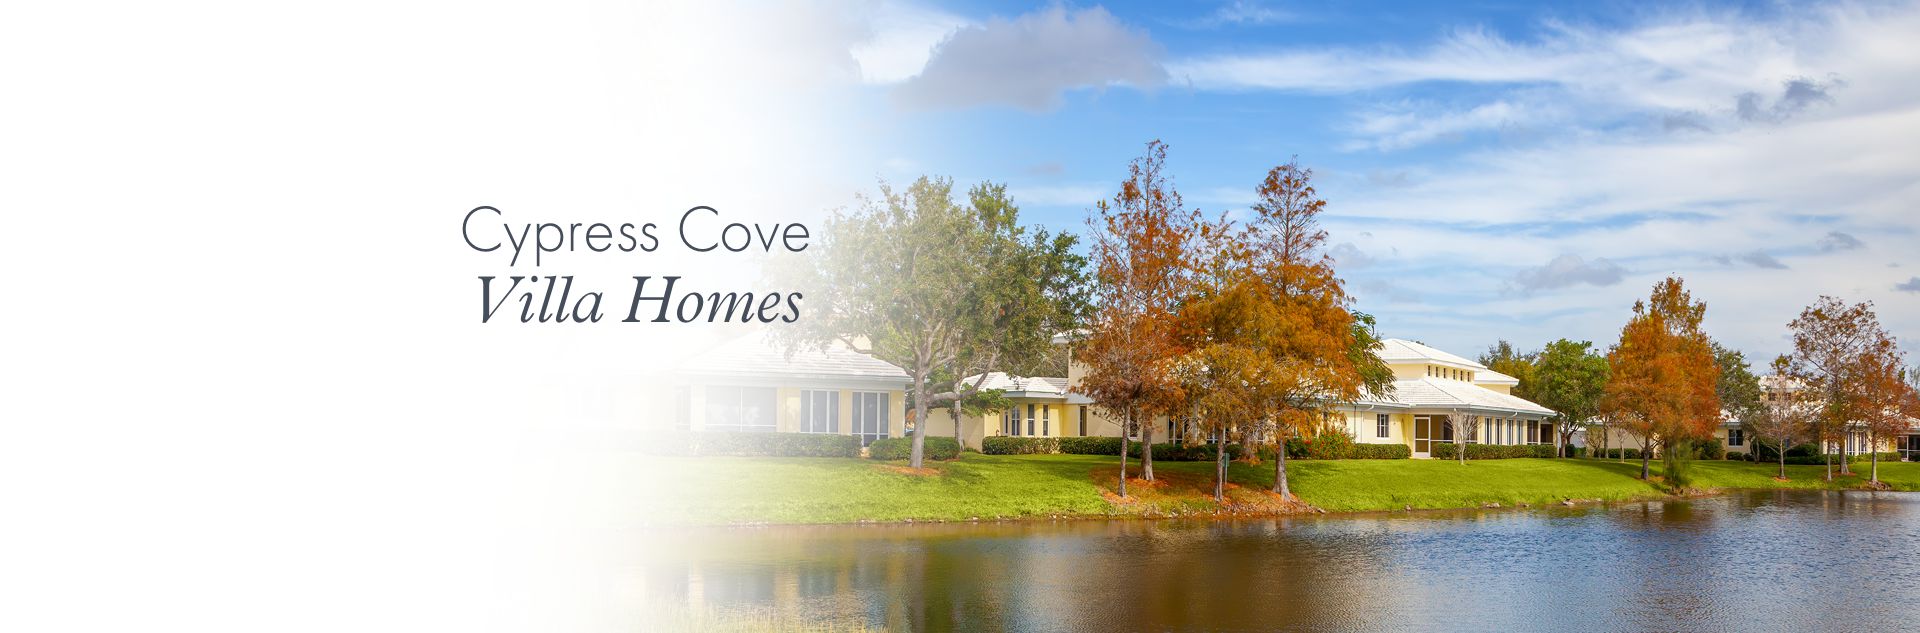 Cypress Cove Villa Homes